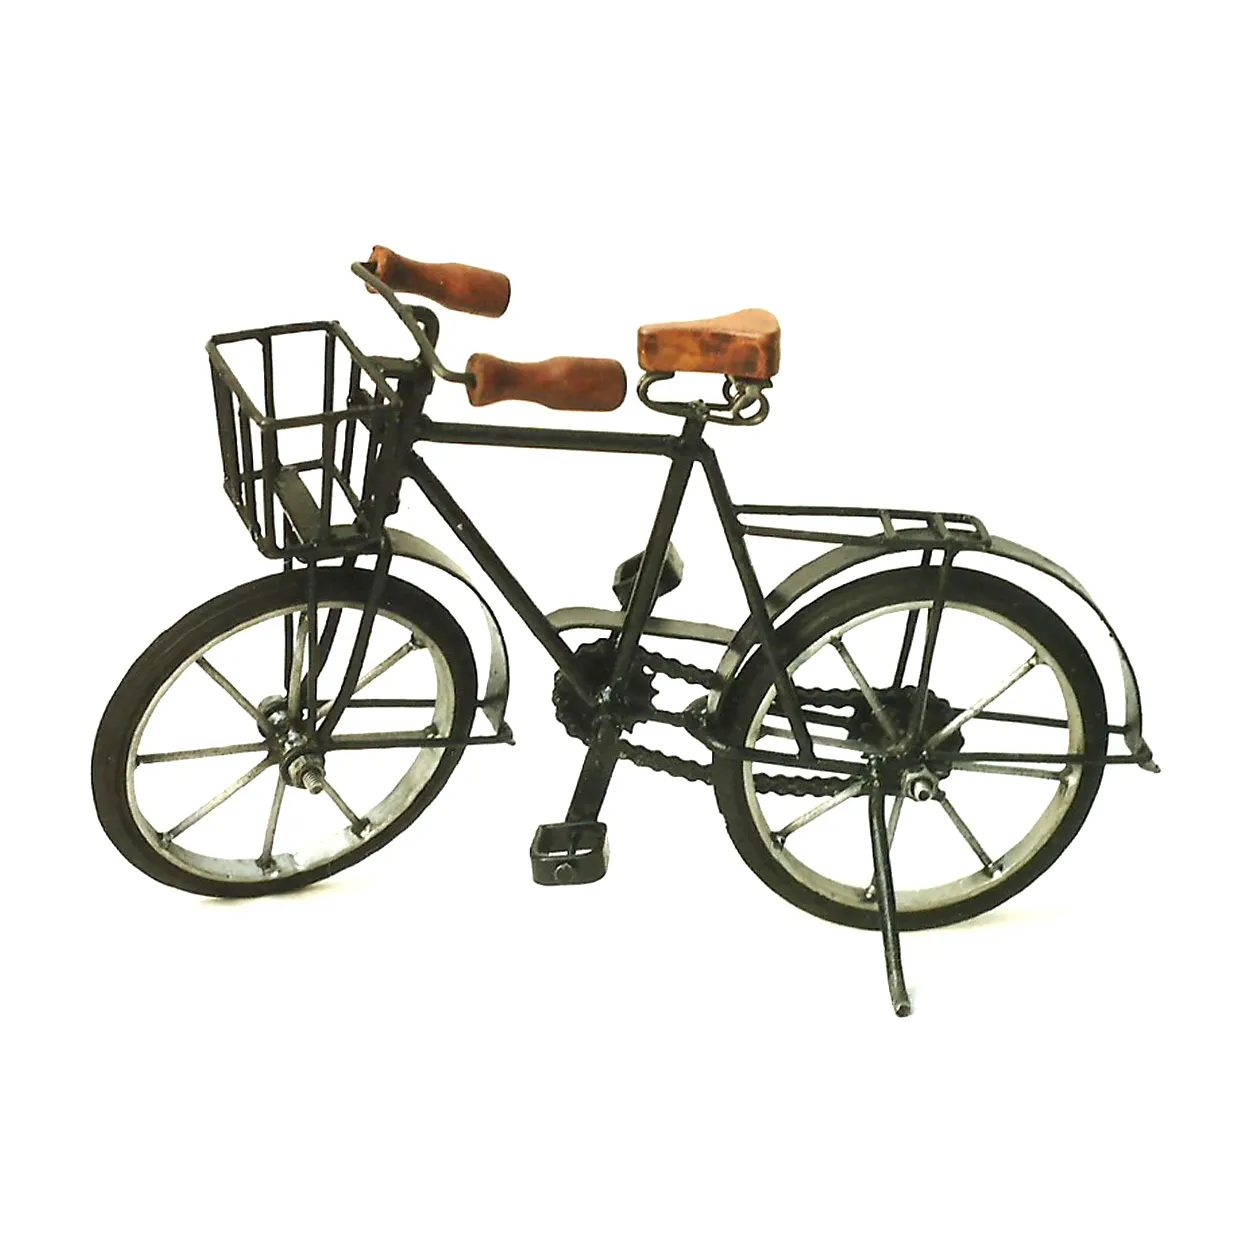 Nuevo Modelo de decoración en miniatura de bicicleta de metal de hierro forjado